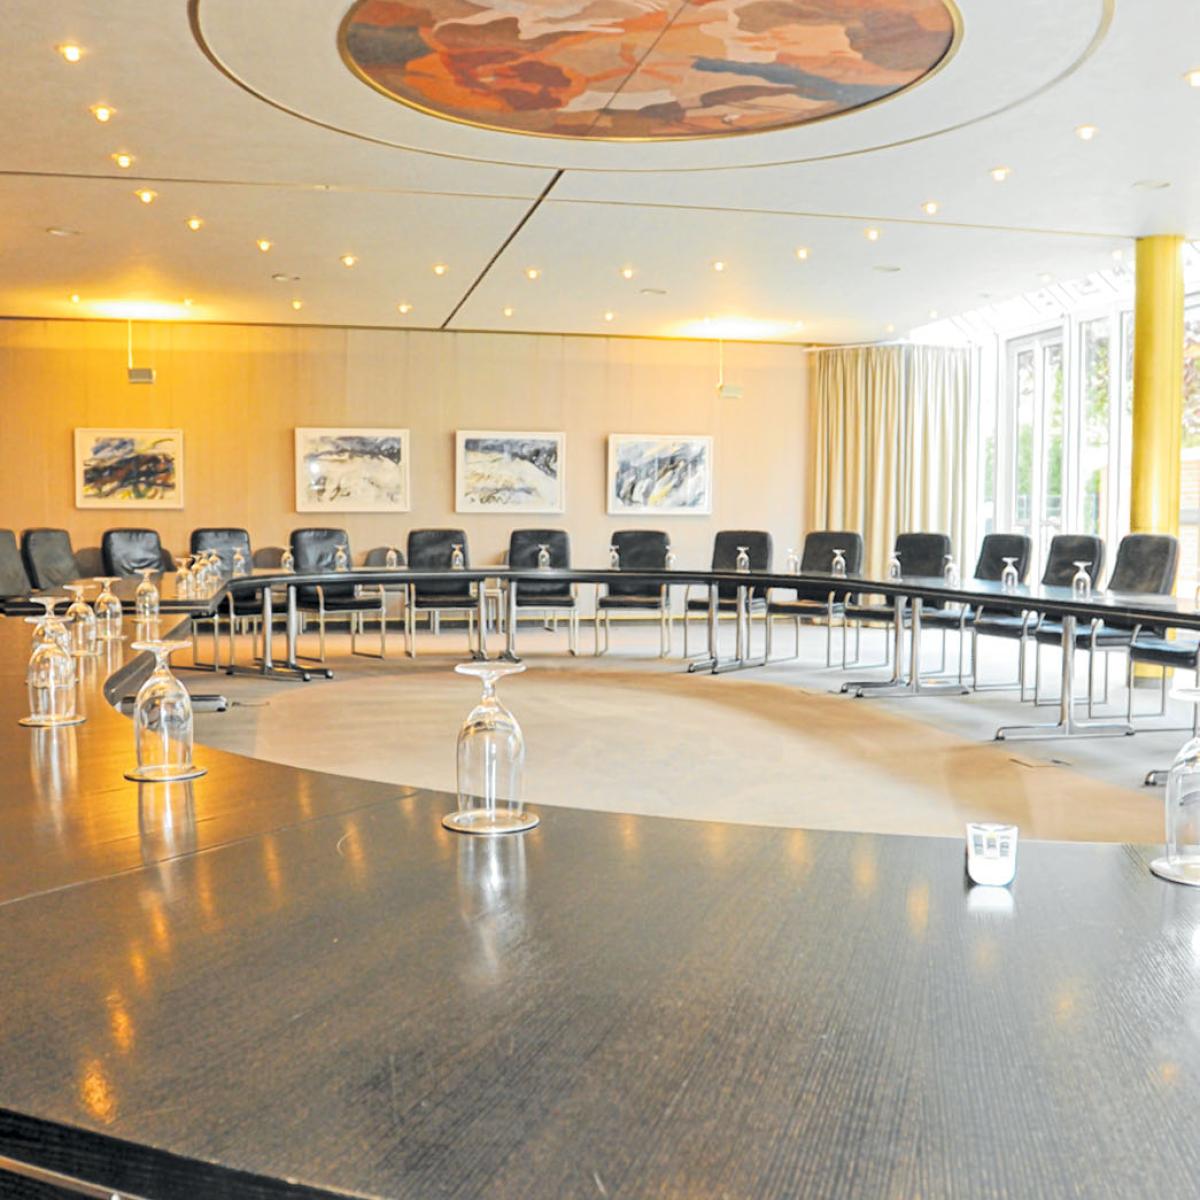 Raum mit rund aufgestellten Tischen auf denen an jedem Platz ein Trinkglas steht ein Sitzungssaal. 14 Lederstühle sind zu sehen.